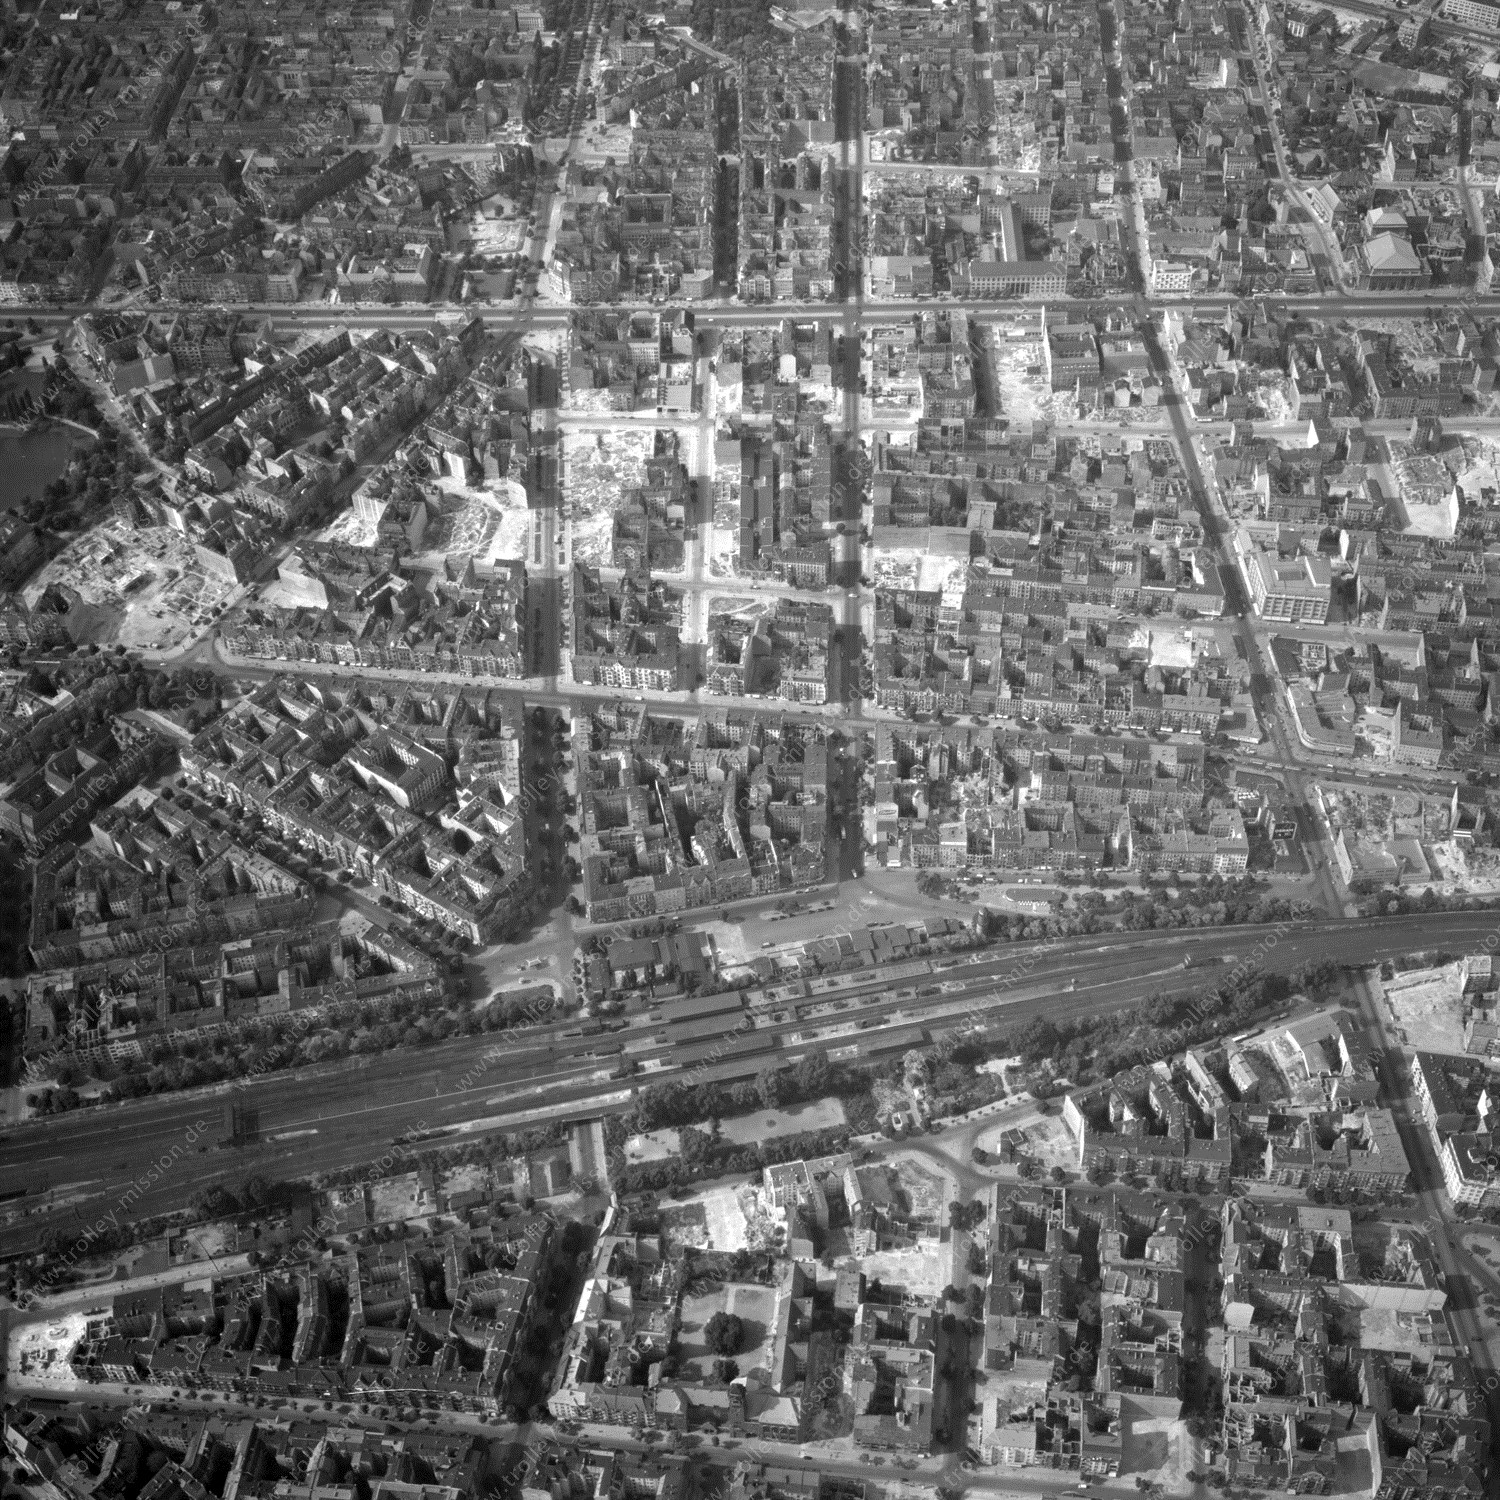 Alte Fotos und Luftbilder von Berlin - Luftbildaufnahme Nr. 10 - Historische Luftaufnahmen von West-Berlin aus dem Jahr 1954 - Flugstrecke Yankee